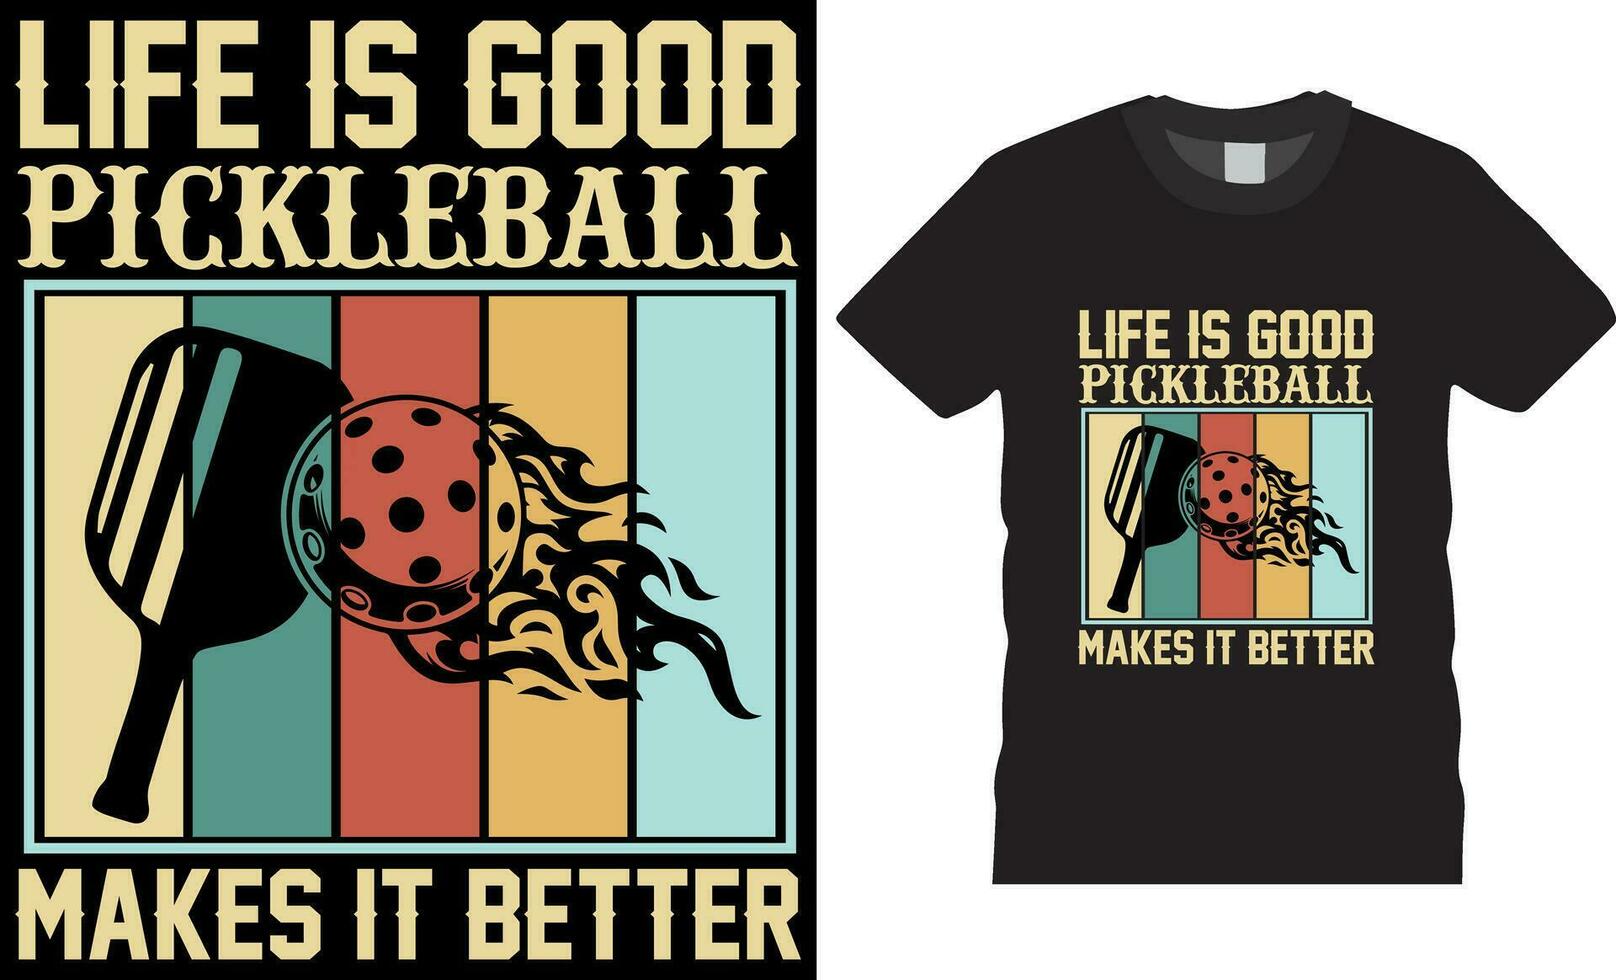 liv är Bra pickleball göra den bättre, ättikslag boll t-shirt design vektor skriva ut mall